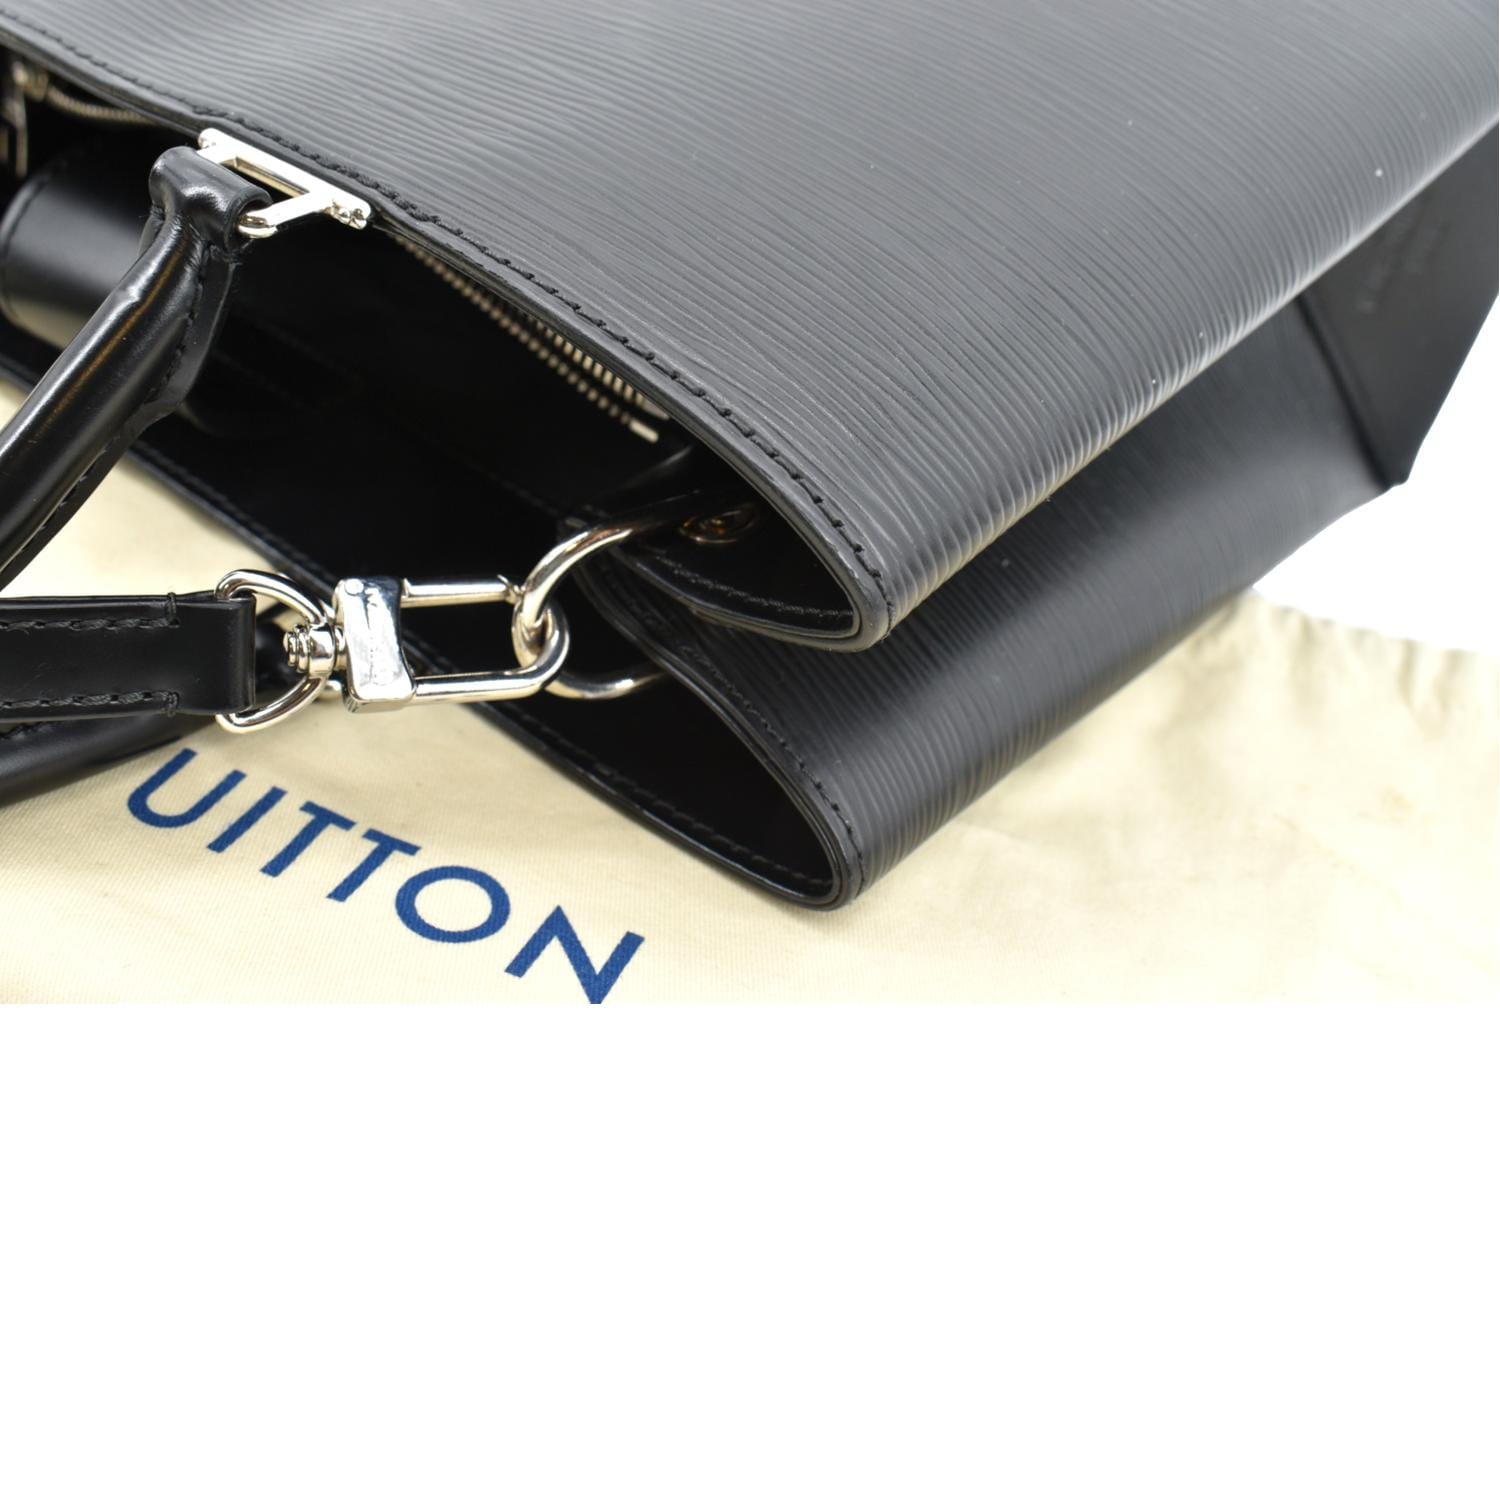 Louis Vuitton BRAND NEW Kleber bag